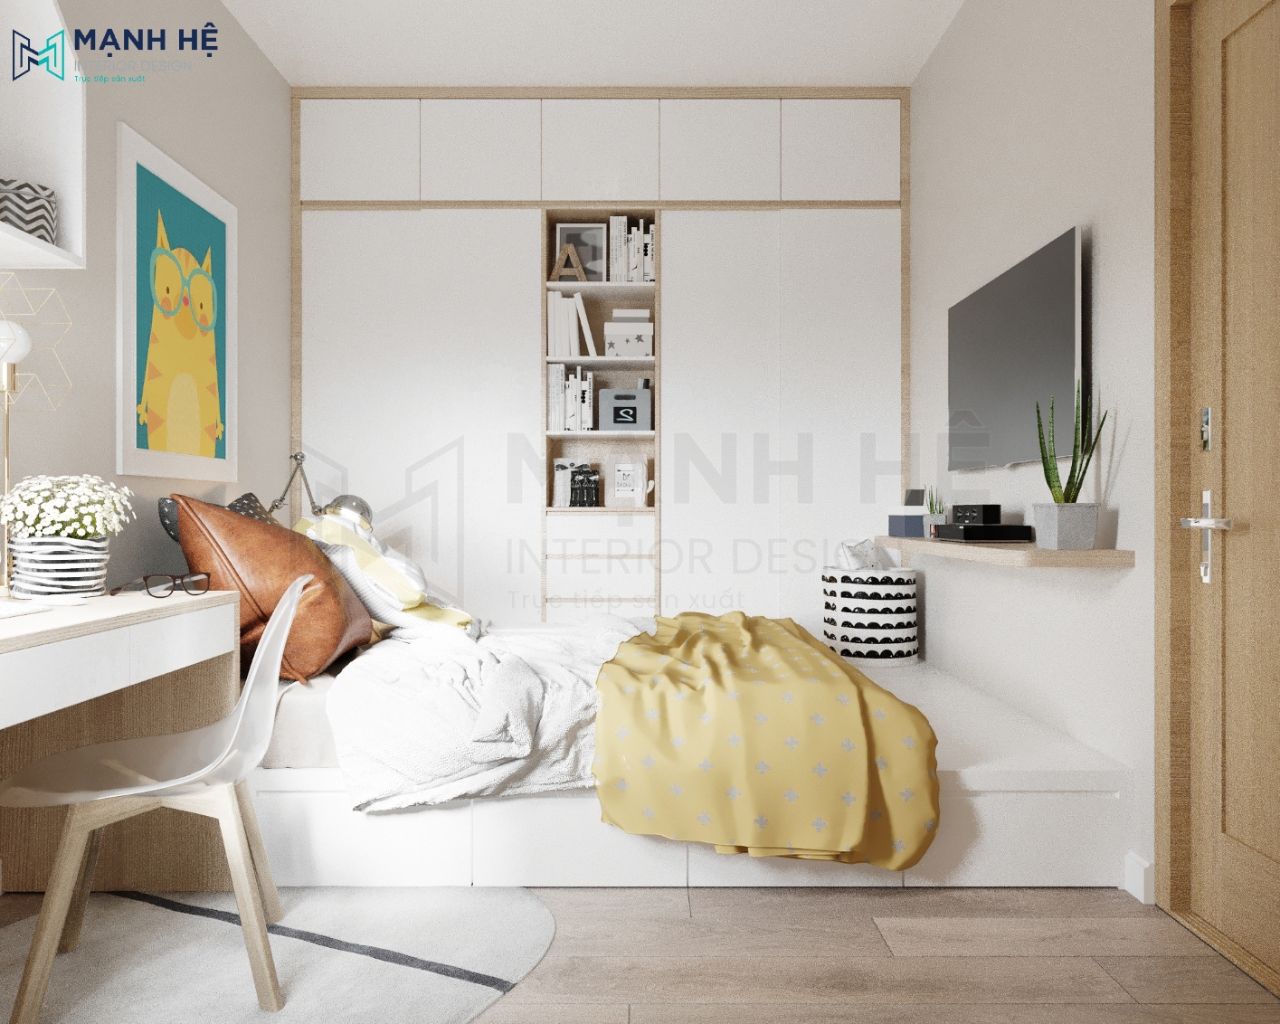  Giường ngủ dạng bục - tuyệt chiêu tiết kiệm diện tích thông minh cho chung cư nhỏ